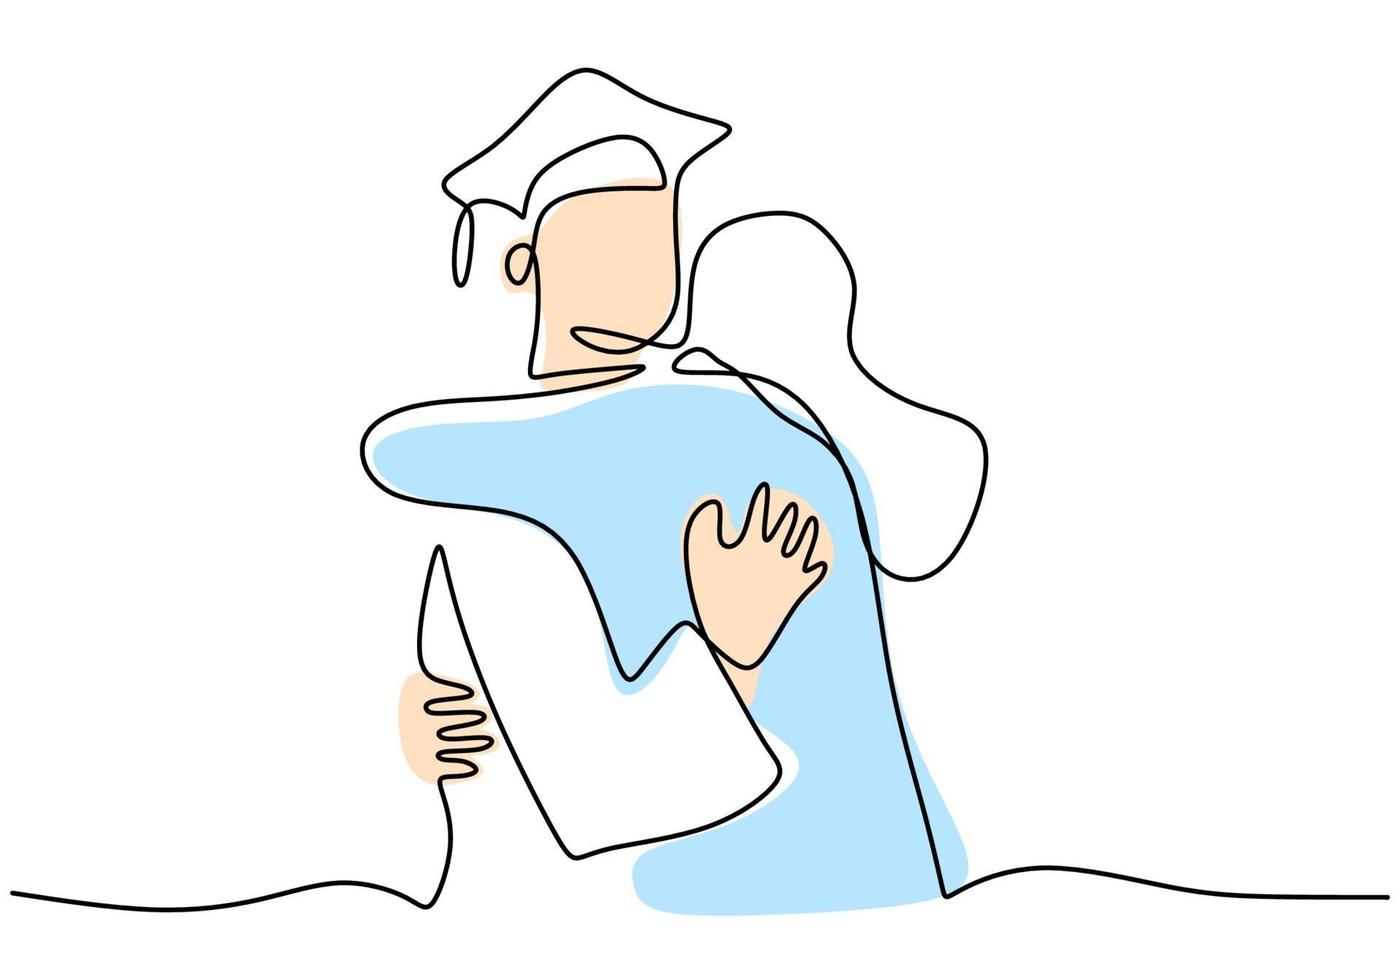 kontinuerlig linje ritning av examen män student med sin vän kramar varandra. firande ceremoni magisterexamen akademi examen design skiss disposition ritning vektorillustration vektor